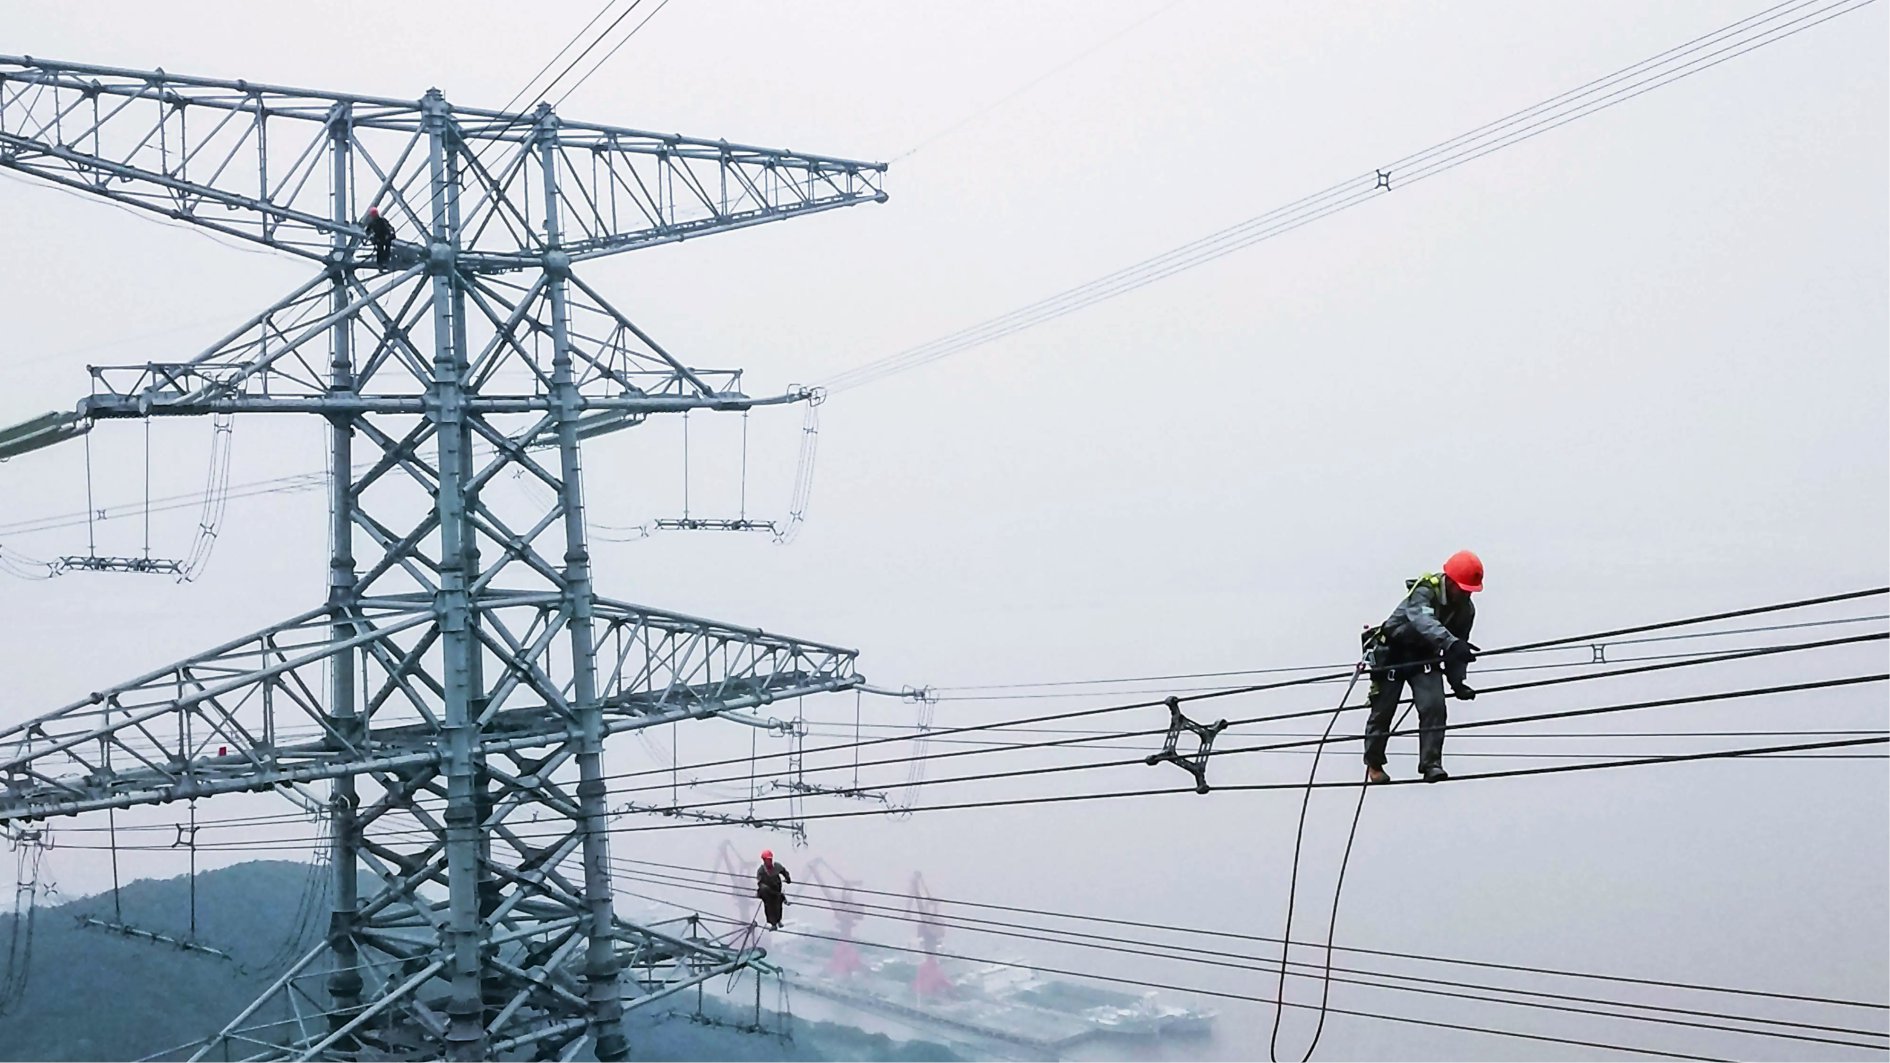 2022-2028年全球输电市场规模预计超480亿美元-淮安振宇电缆样品有限公司